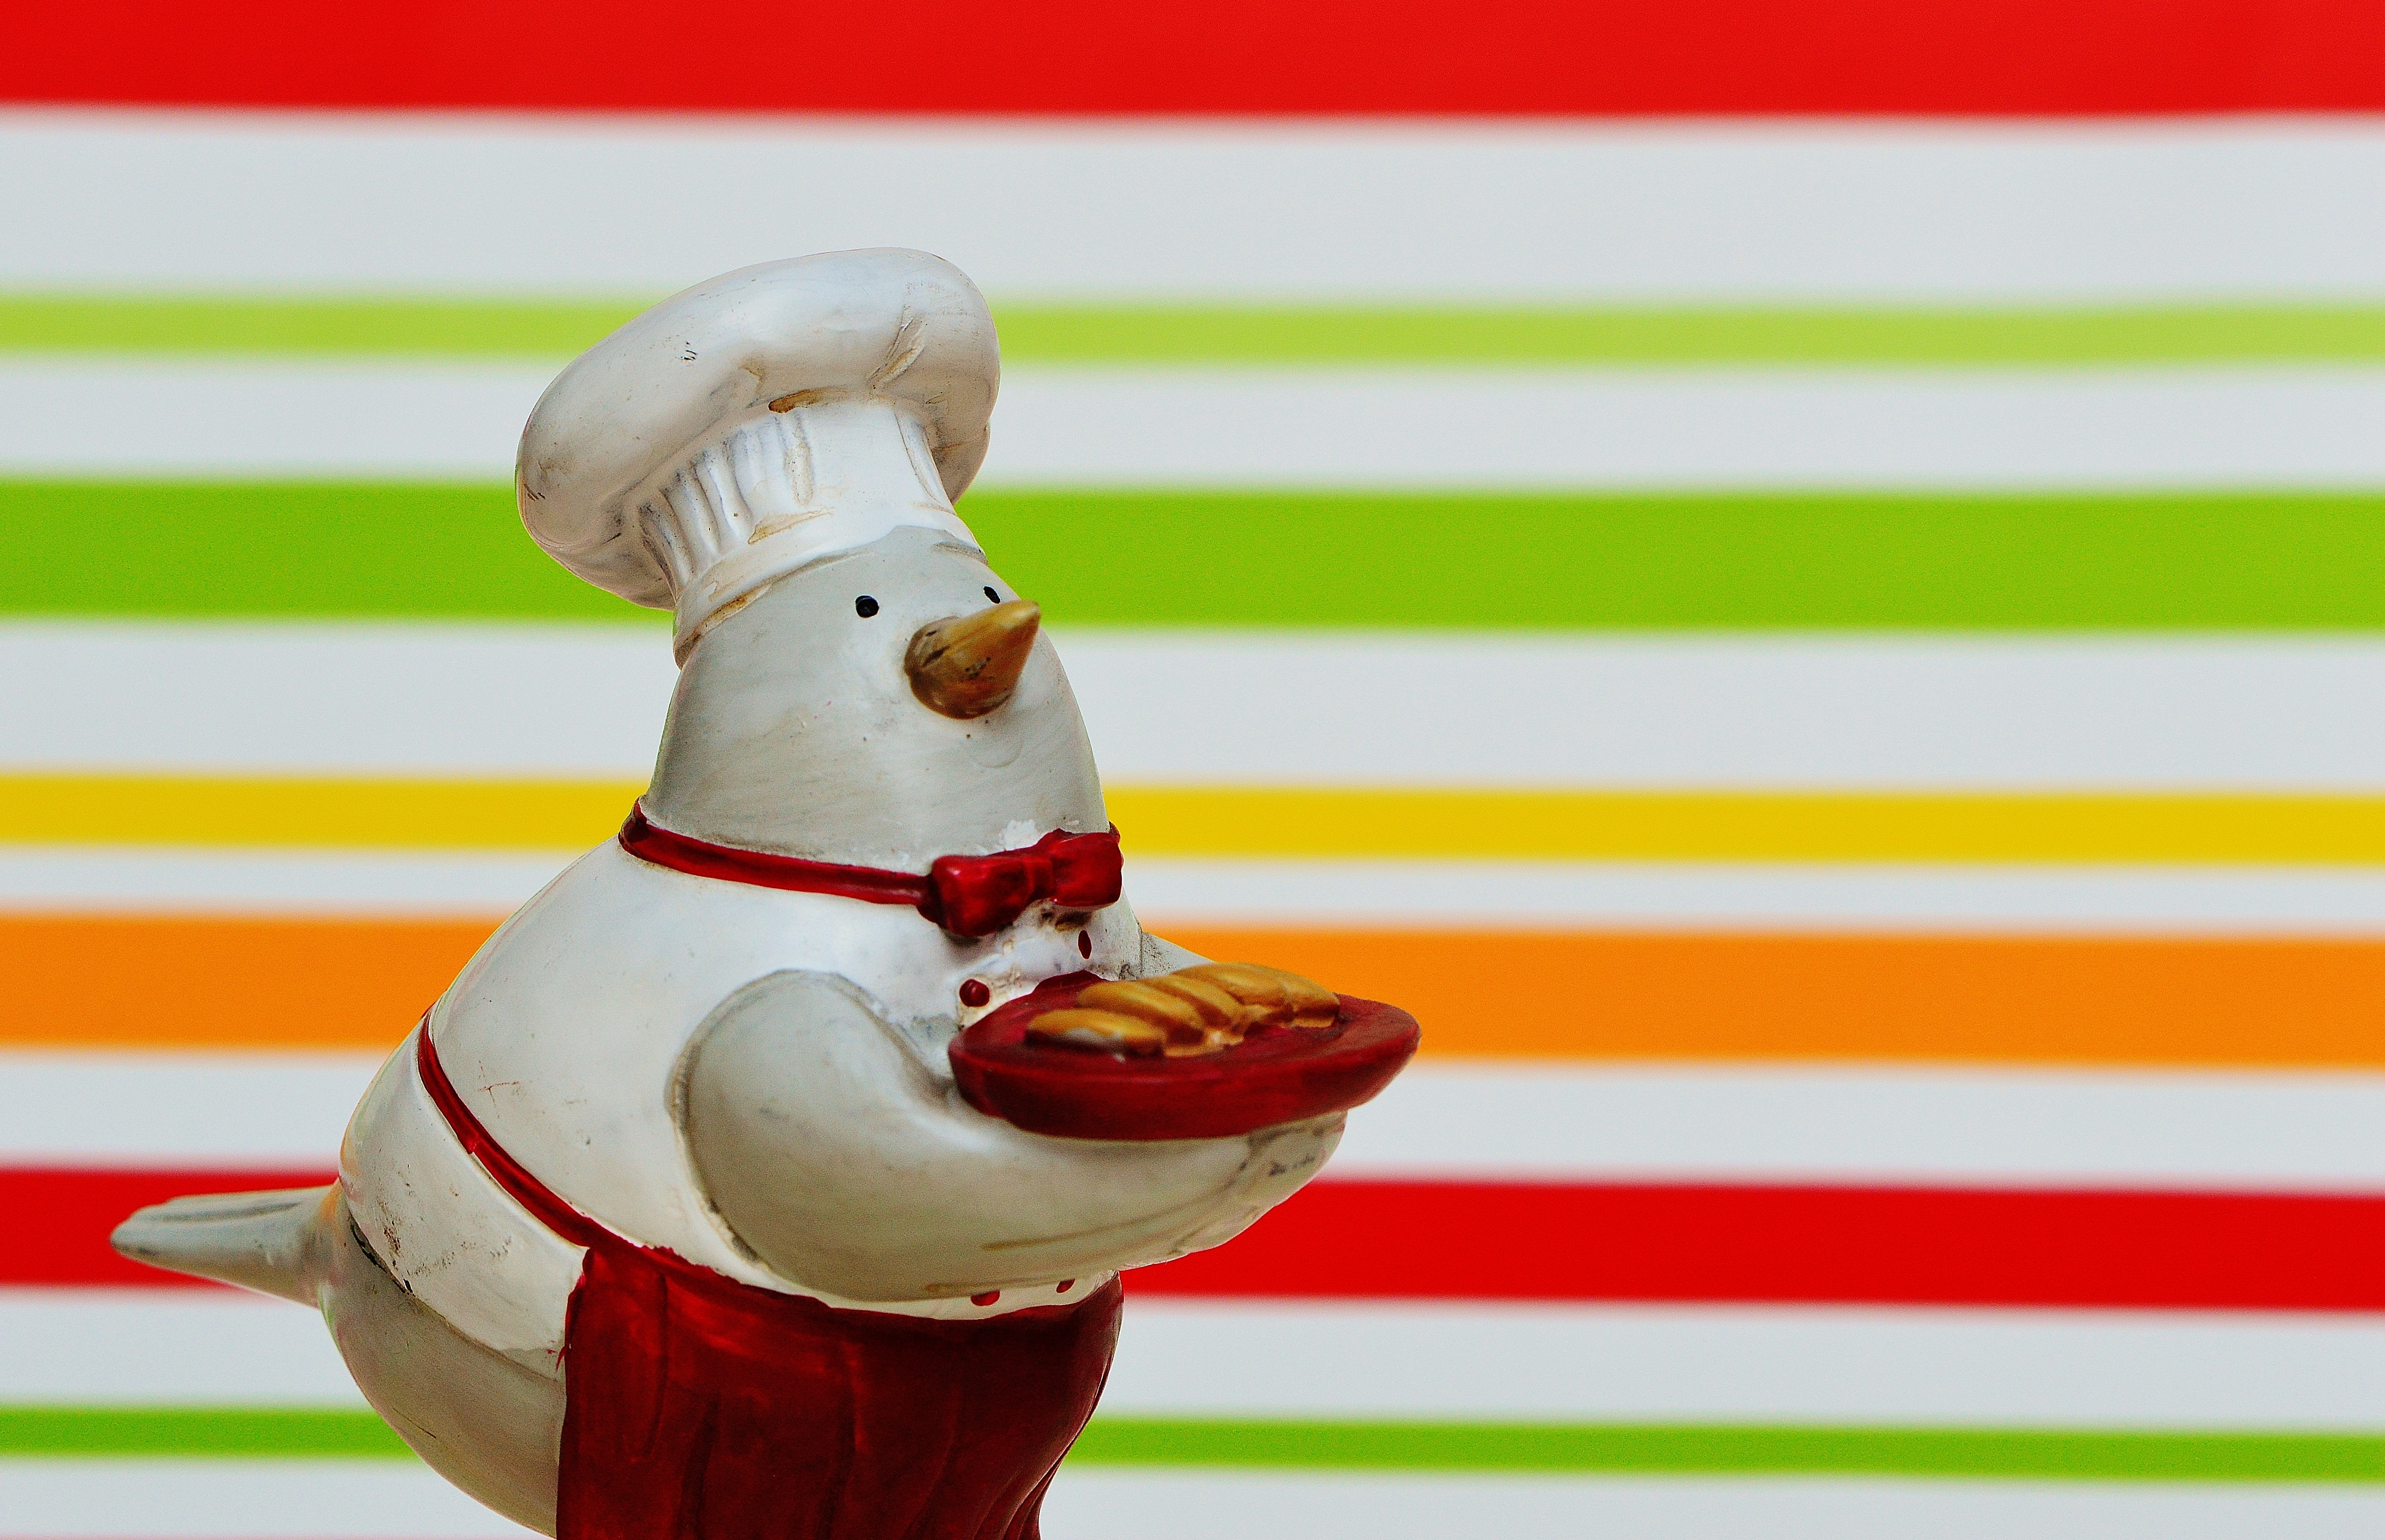 white snowman chef ceramic figurine